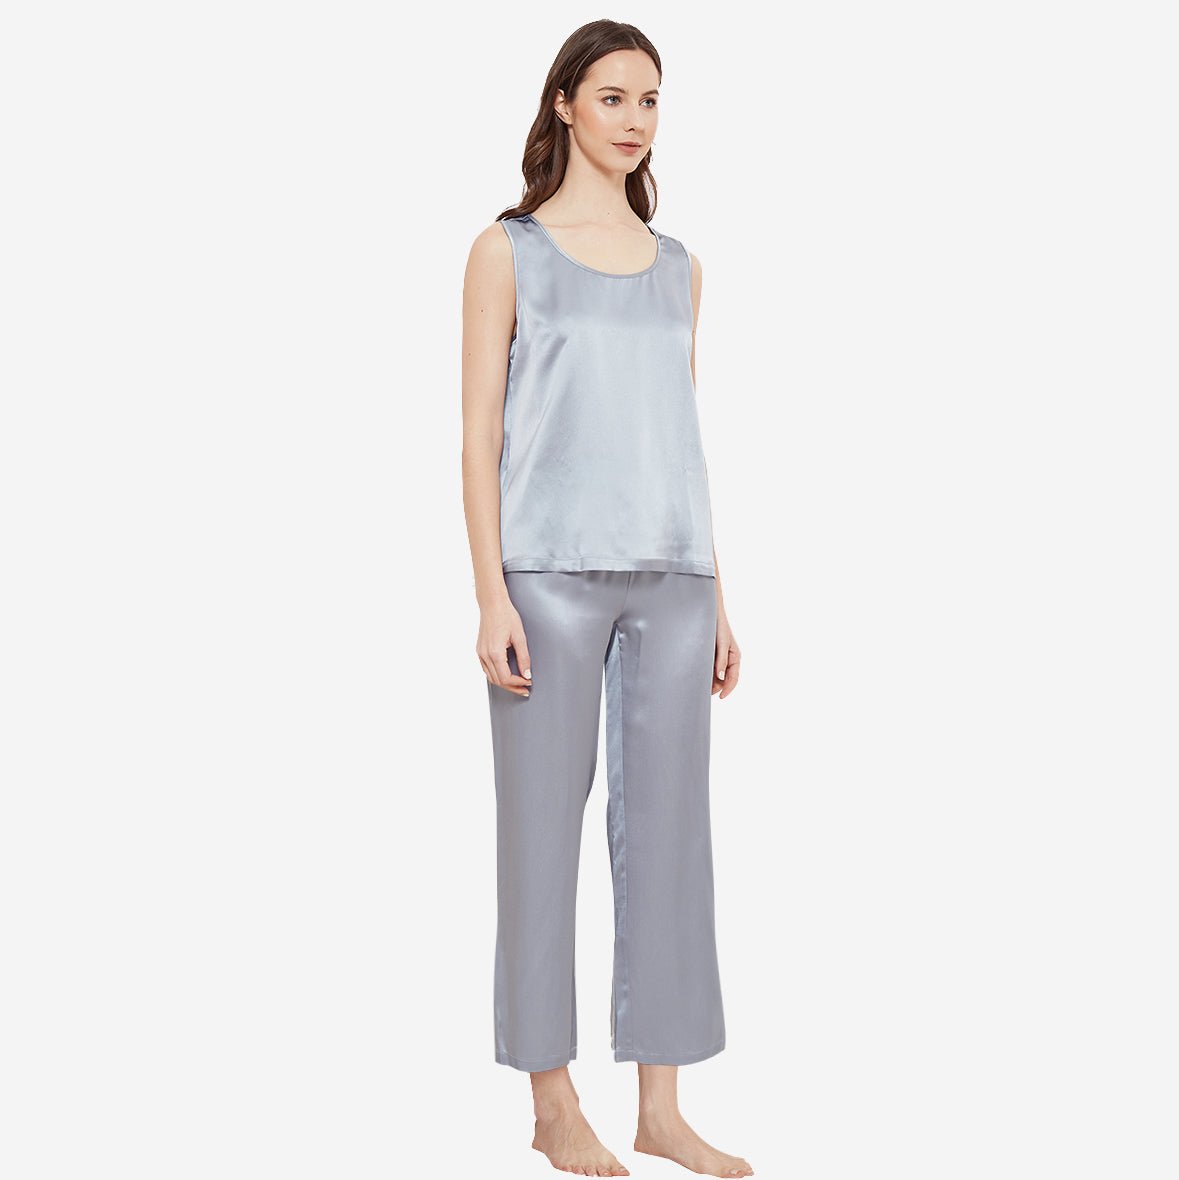 100% Silk Pajama Set Luxury Sleepwear Sleeveless Silk Tops Pajamas